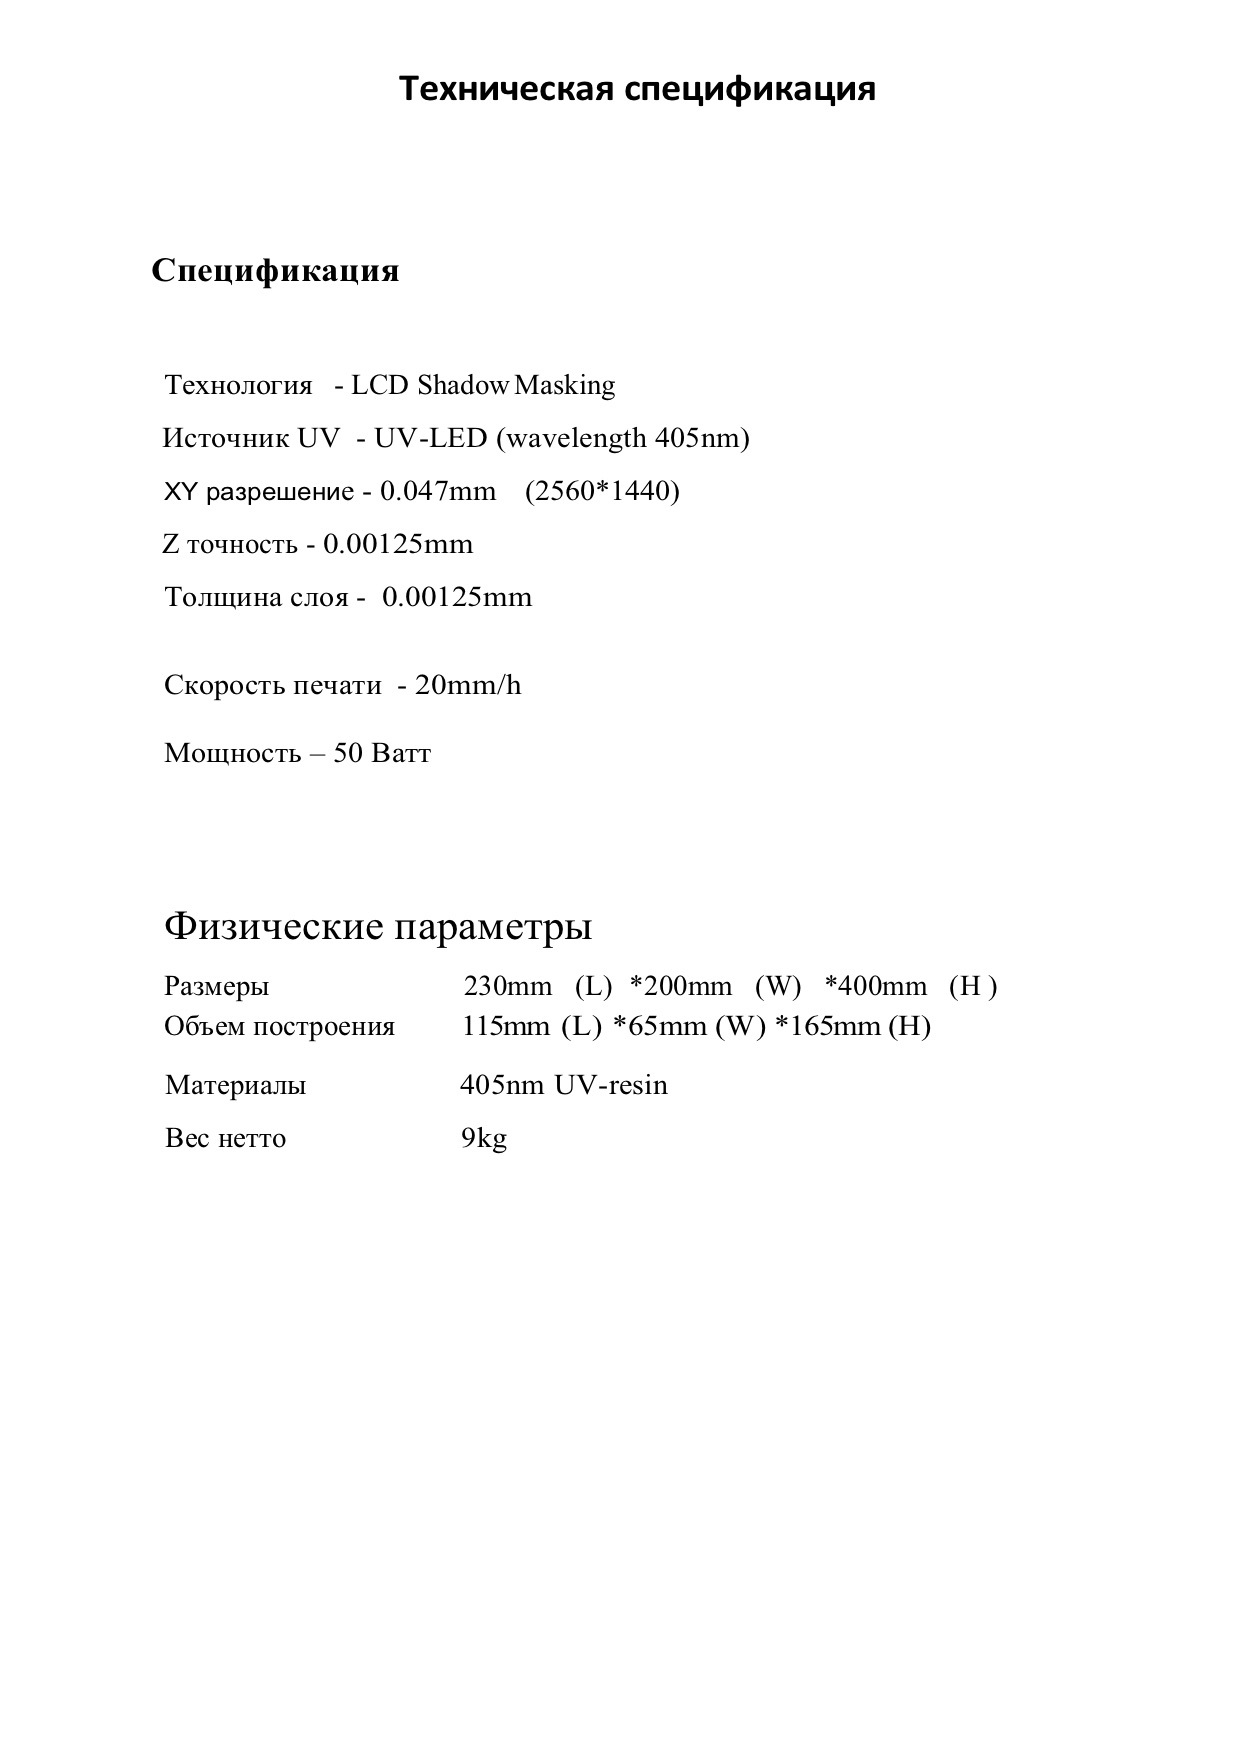 Инструкция Anycubic Photon S на русском языке